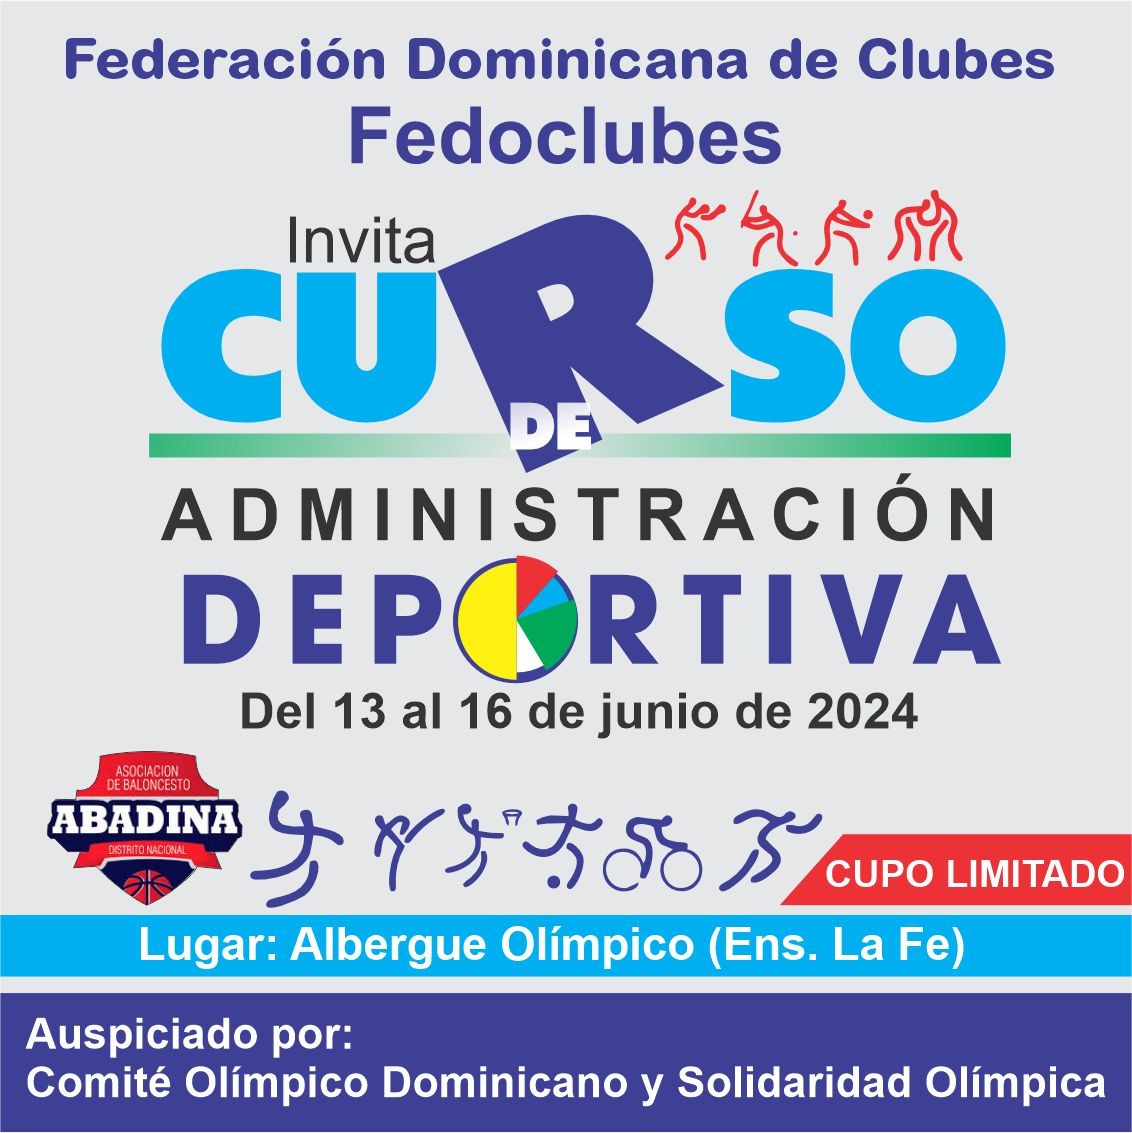 FEDOCLUBES INVITA A CURSO DE ADMINISTRACIÓN DEPORTIVA PARA DIRIGENTES DE CLUBES. Del 13 al 16 de junio del 2024. Cupo limitado...